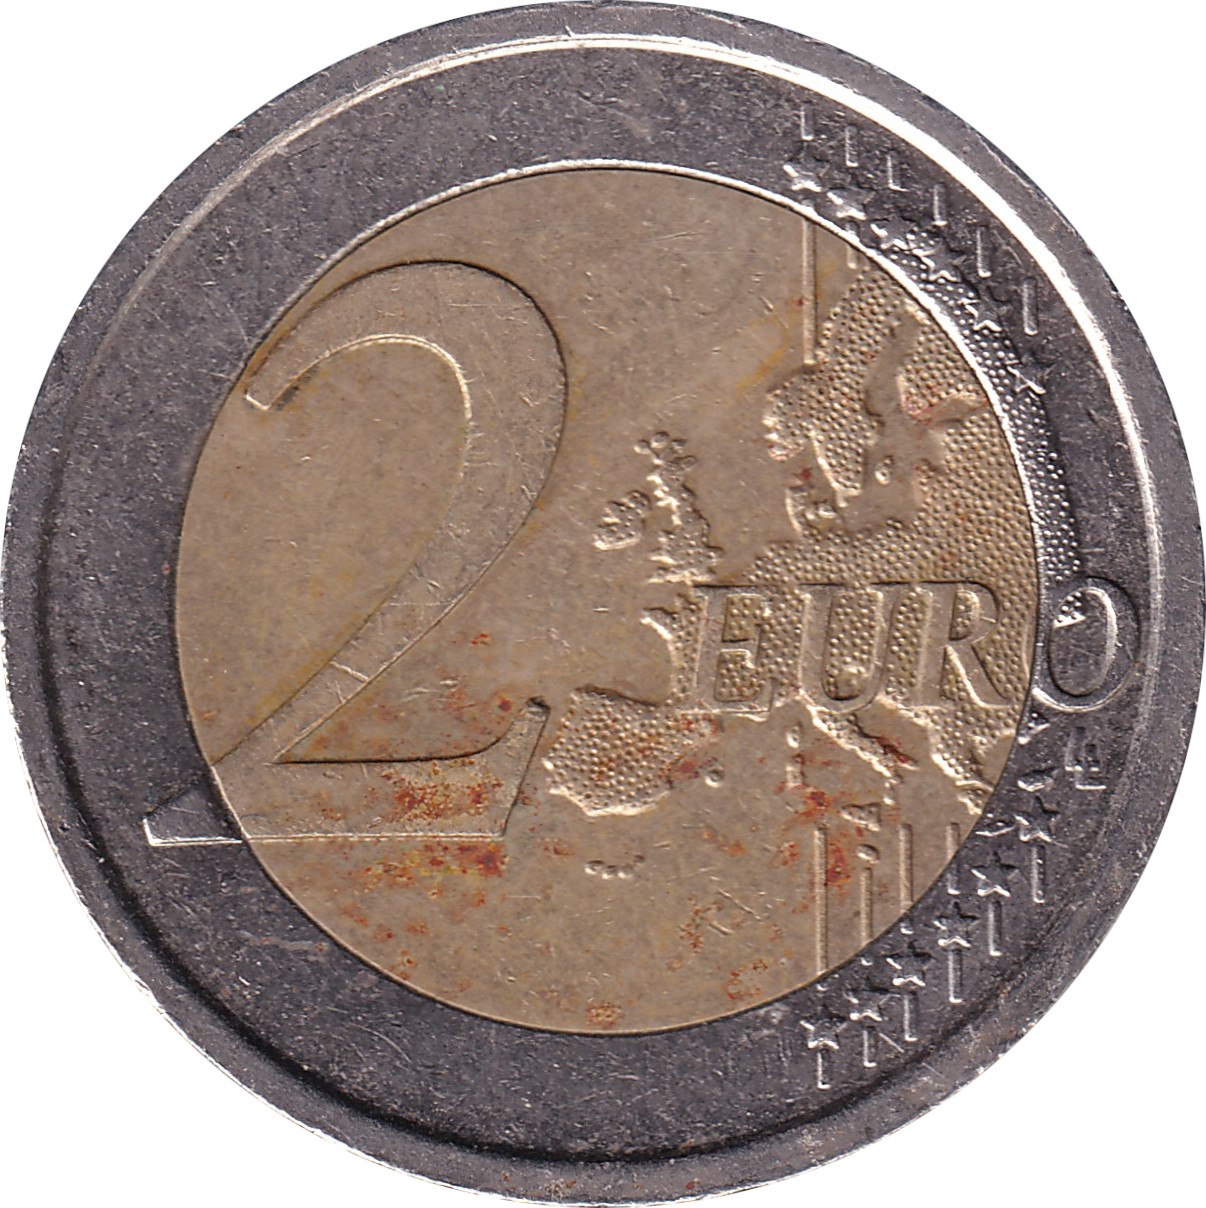 2 euro - Union Économique Monétaire - Italie